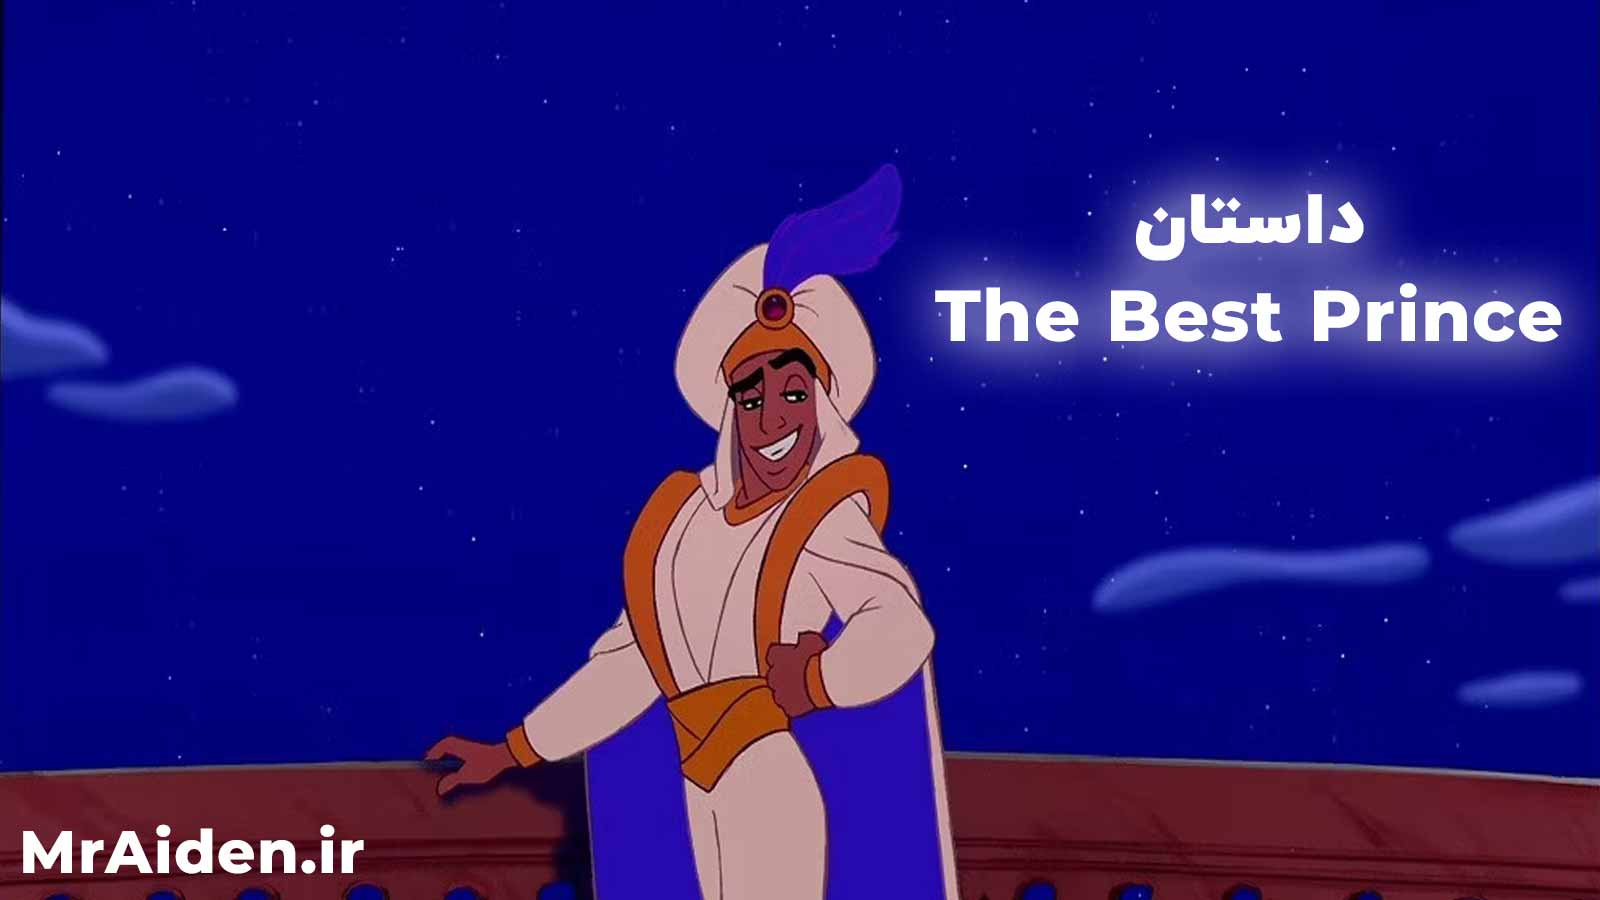 داستان بهترین شاهزاده – The Best Prince